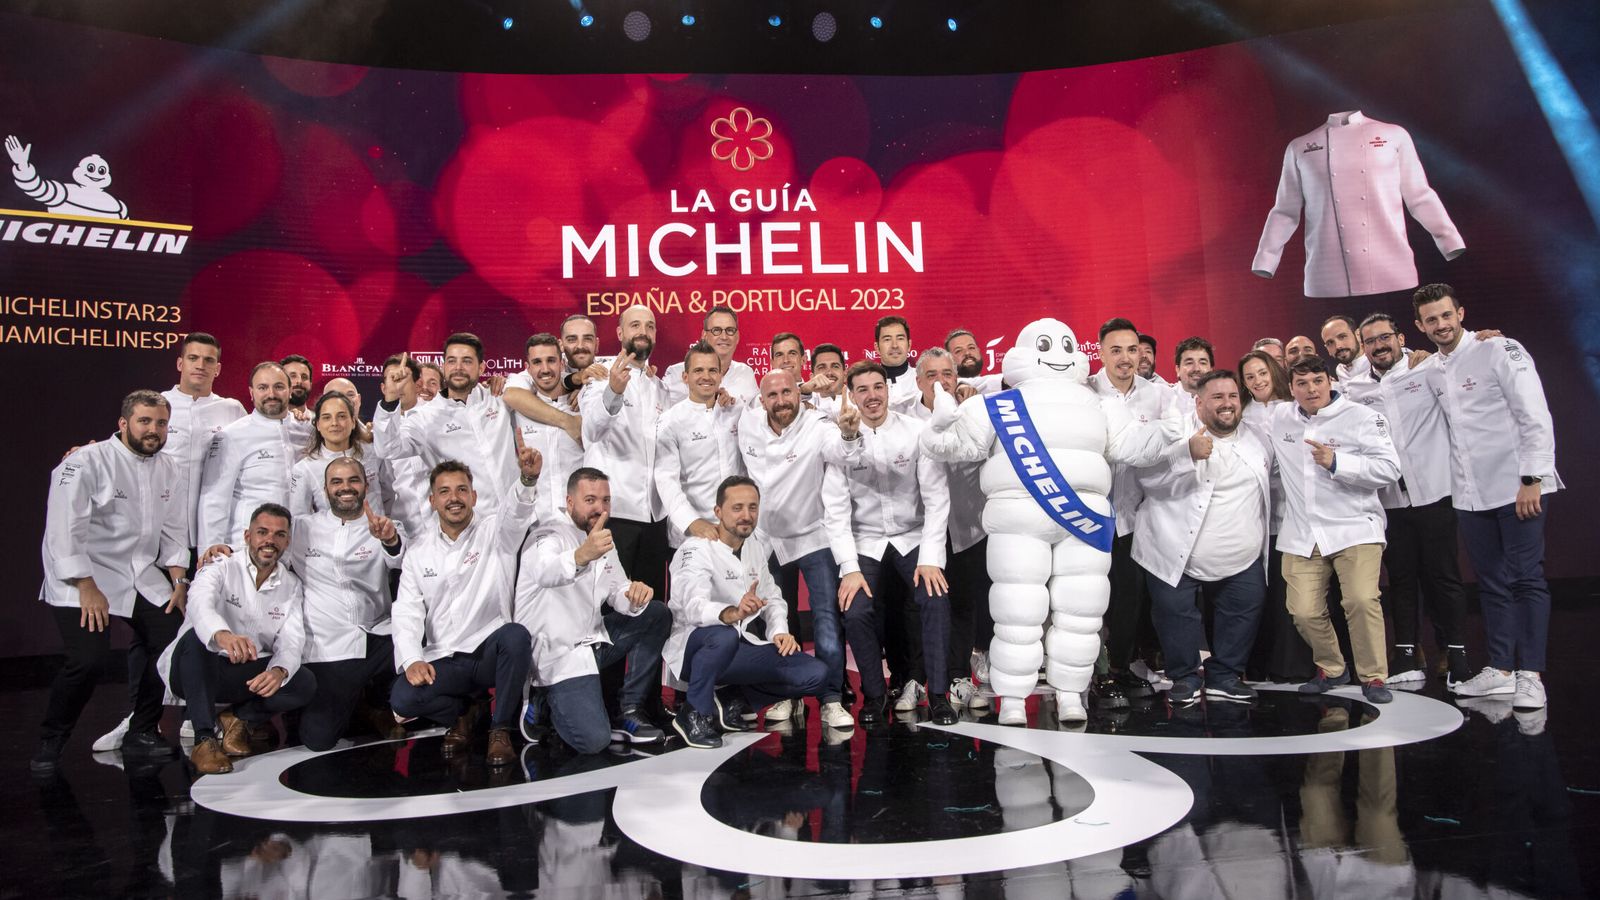 Los cocineros con una estrella Michellin posan durante la Gala de la Guía Michelin 2023. (EFE/Ismael Herrero)